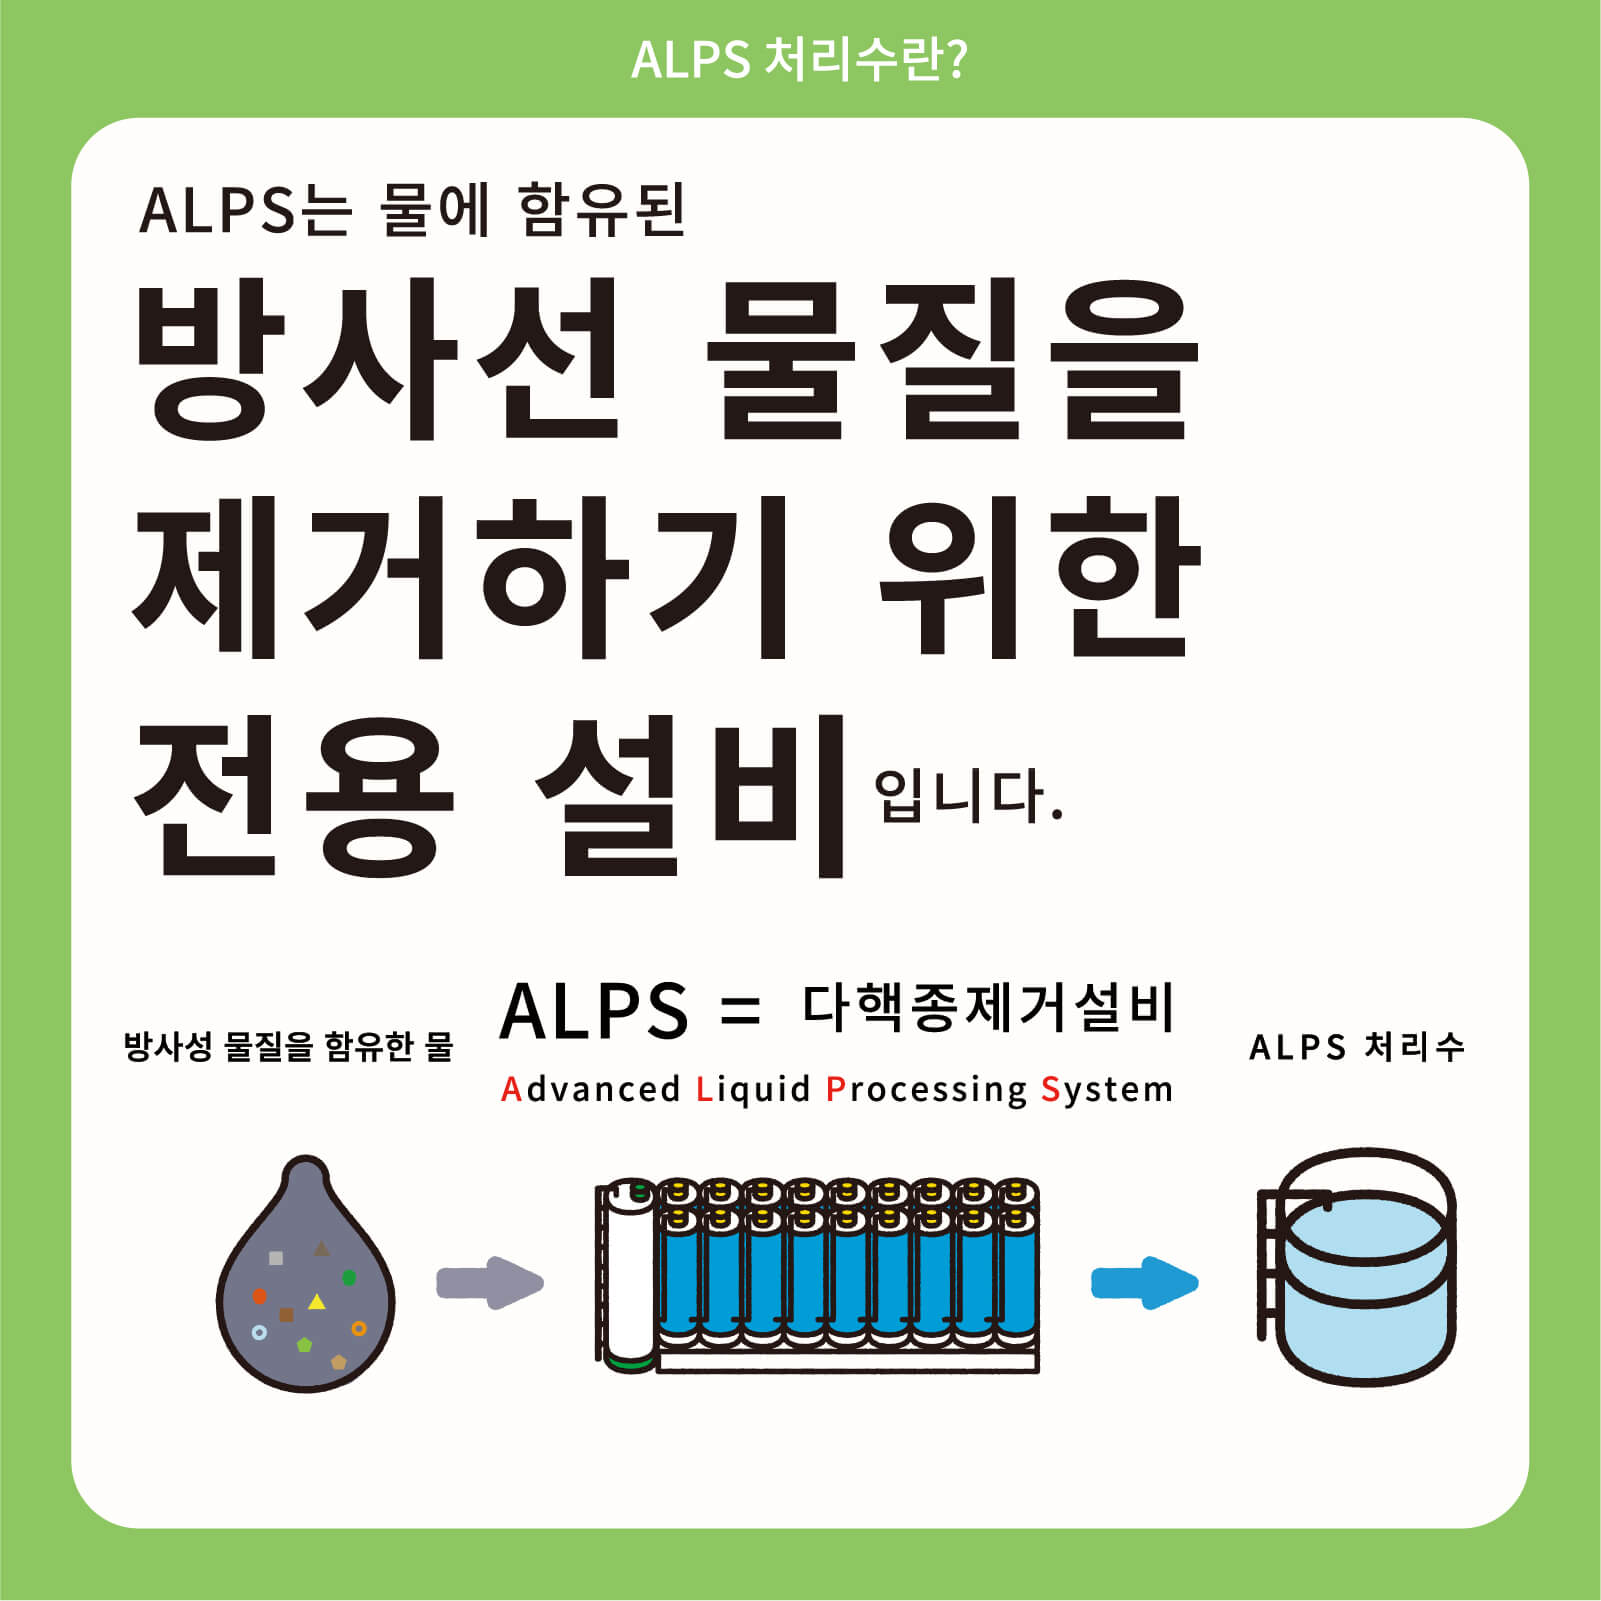 ALPS는 물에 함유된 방사선 물질을 제거하기 위한 전용 설비입니다.